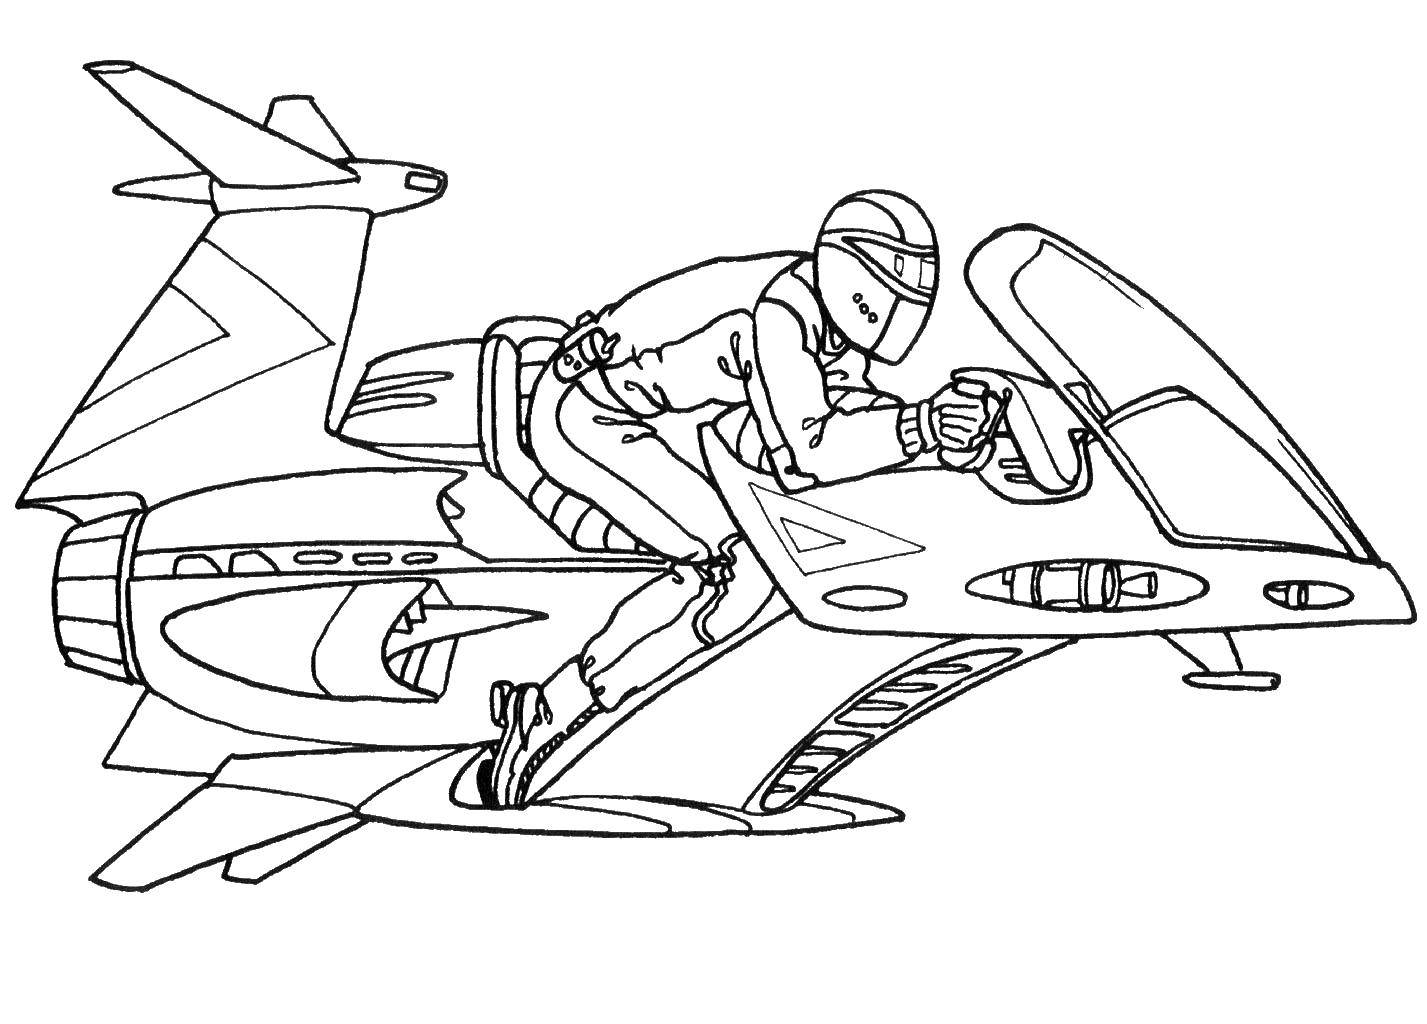 Название: Раскраска Летающий транспорт. Категория: Спецтехника. Теги: транспорт, ракета, человек.